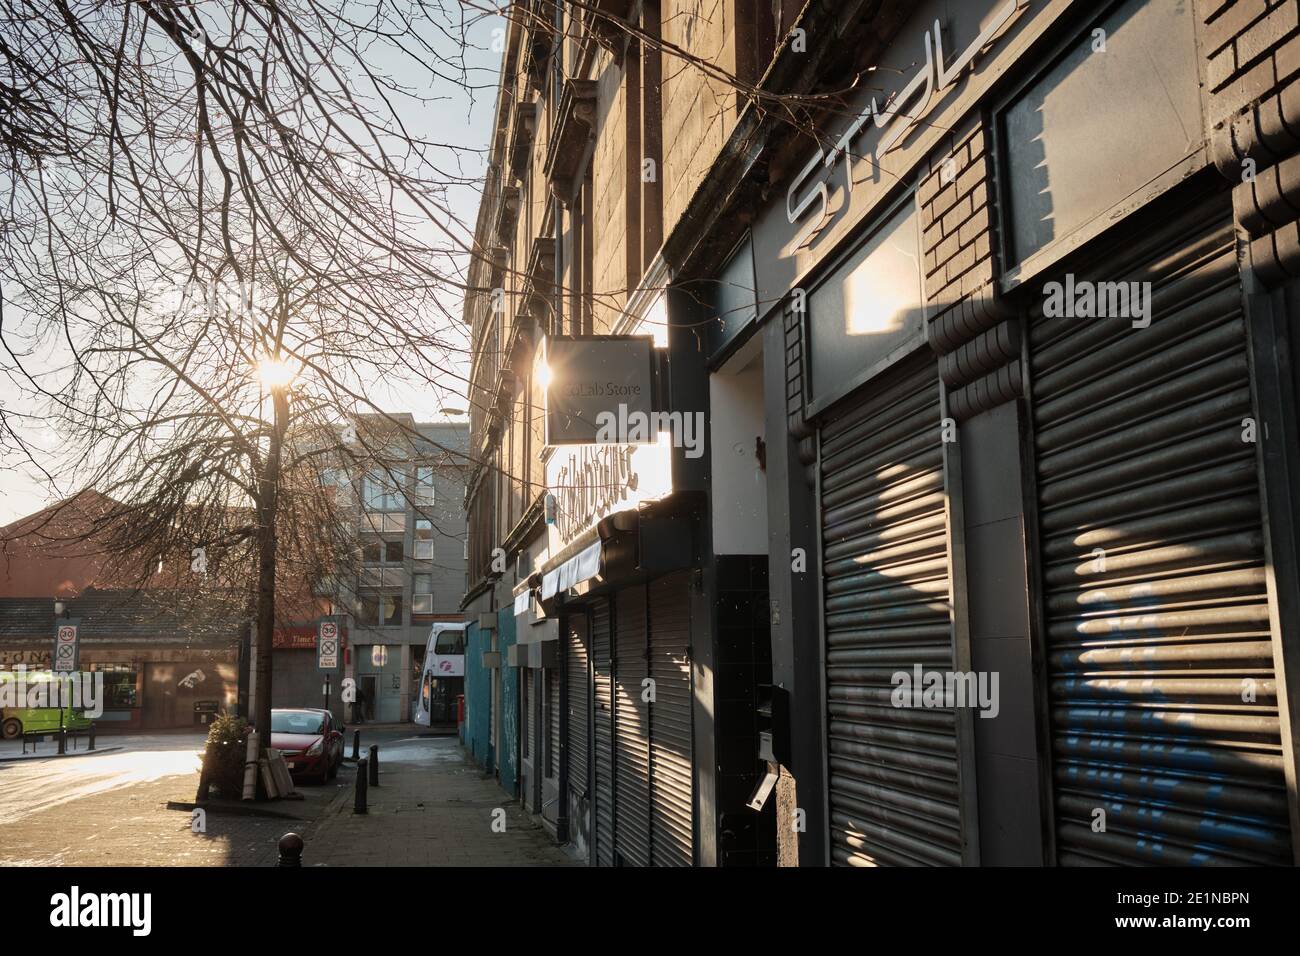 Dowanhill Street, Teilnehmen. Geschäfte mit Fensterläden unten. Glasgow. Januar 2021. Stockfoto